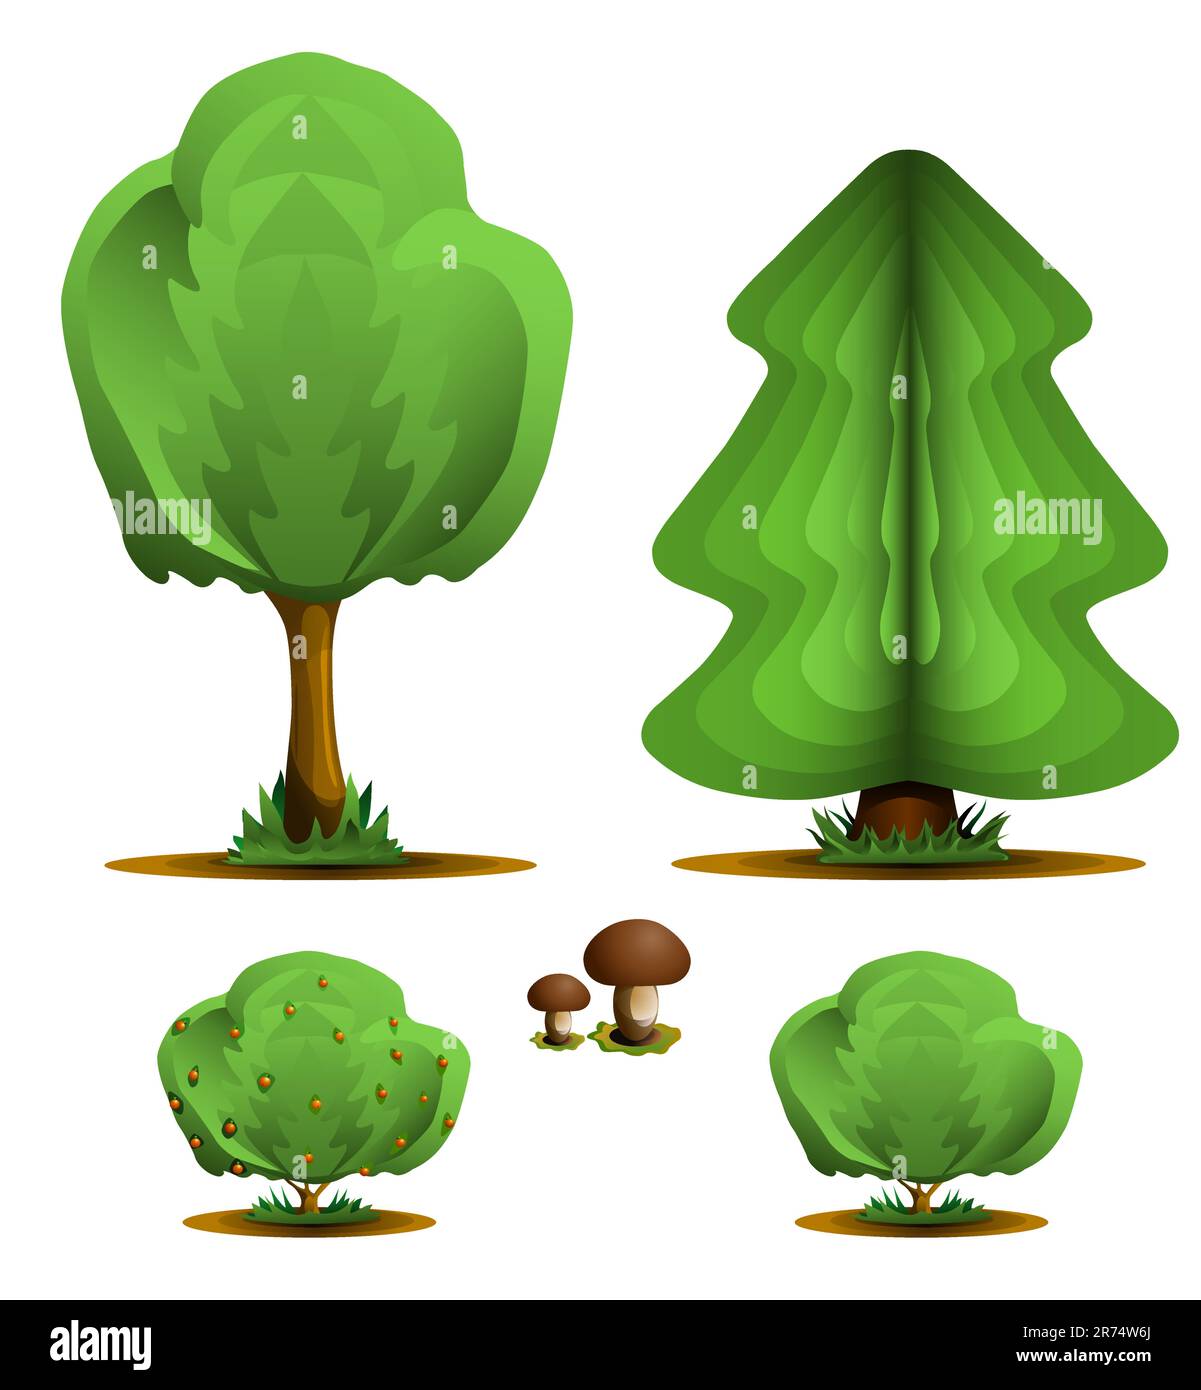 Albero, arbusto, fungo - set di piante forestali, illustrazione vettoriale Illustrazione Vettoriale